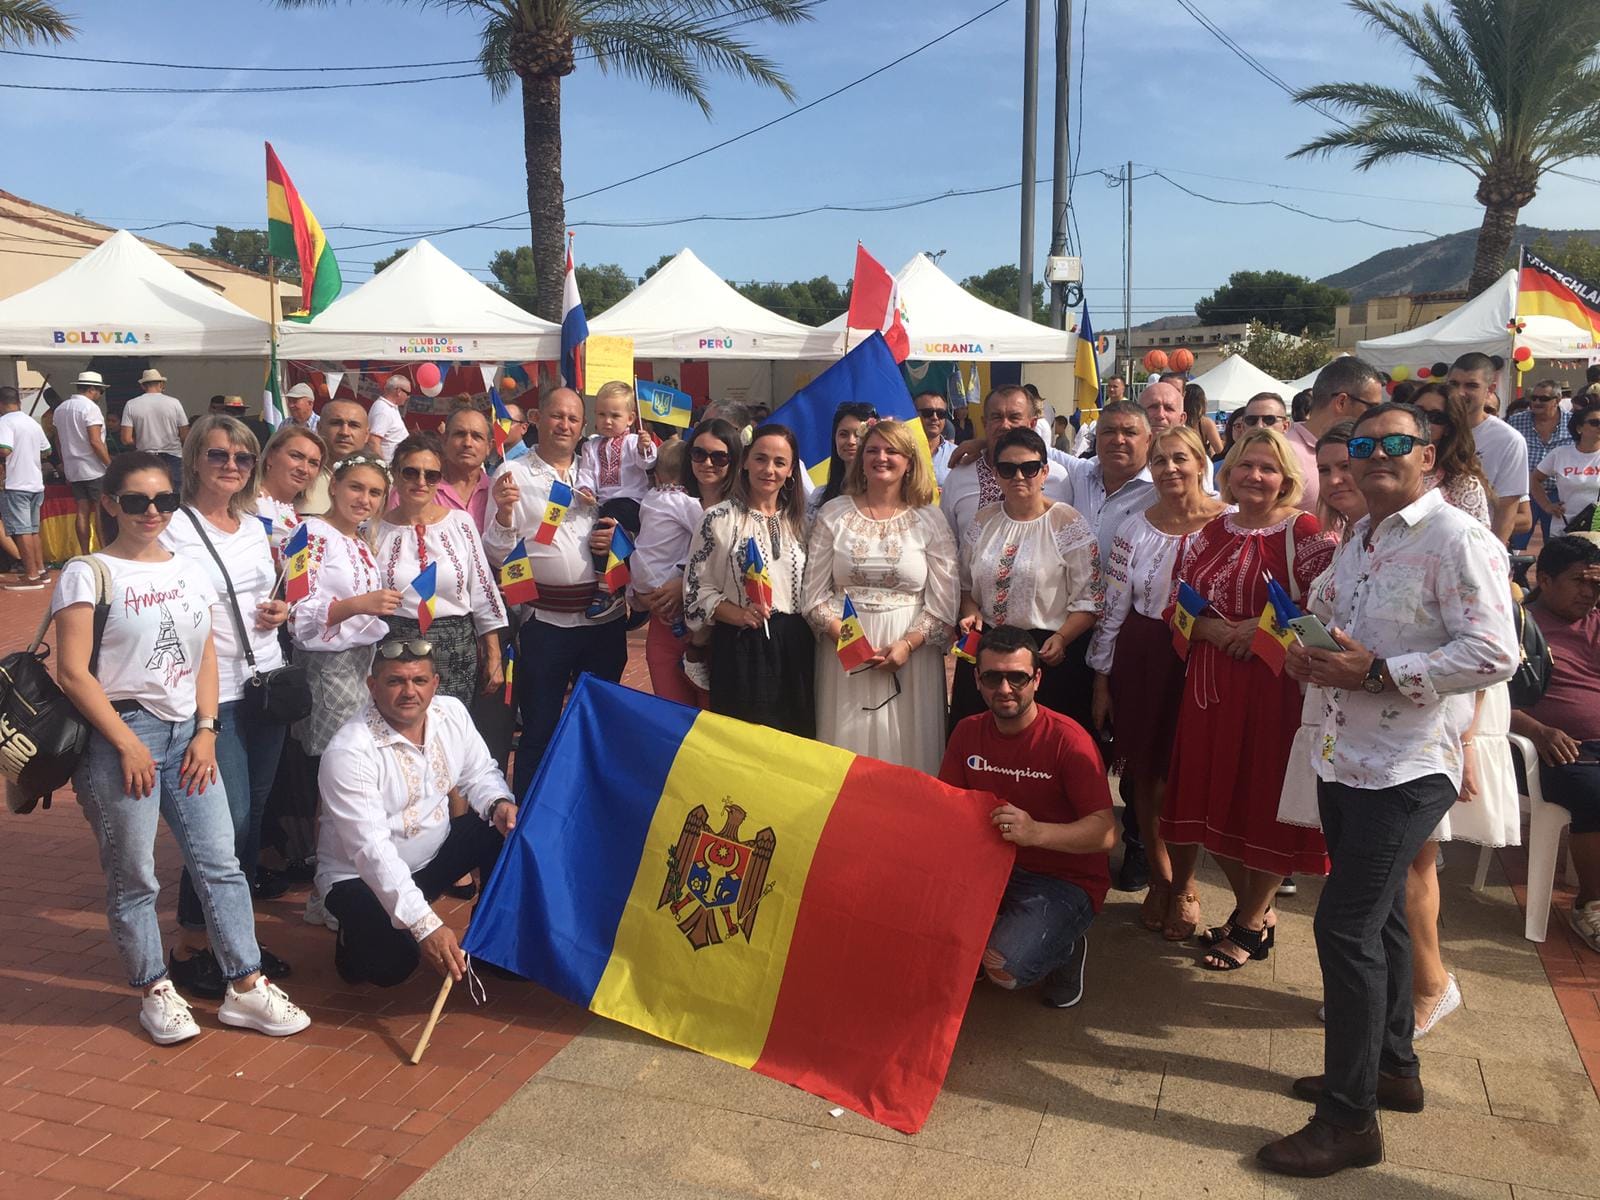 Молдавская община из Бенидорма, Испания, приняла участие в мероприятии, посвященном Дню национальностей в Альфас-дель-Пи